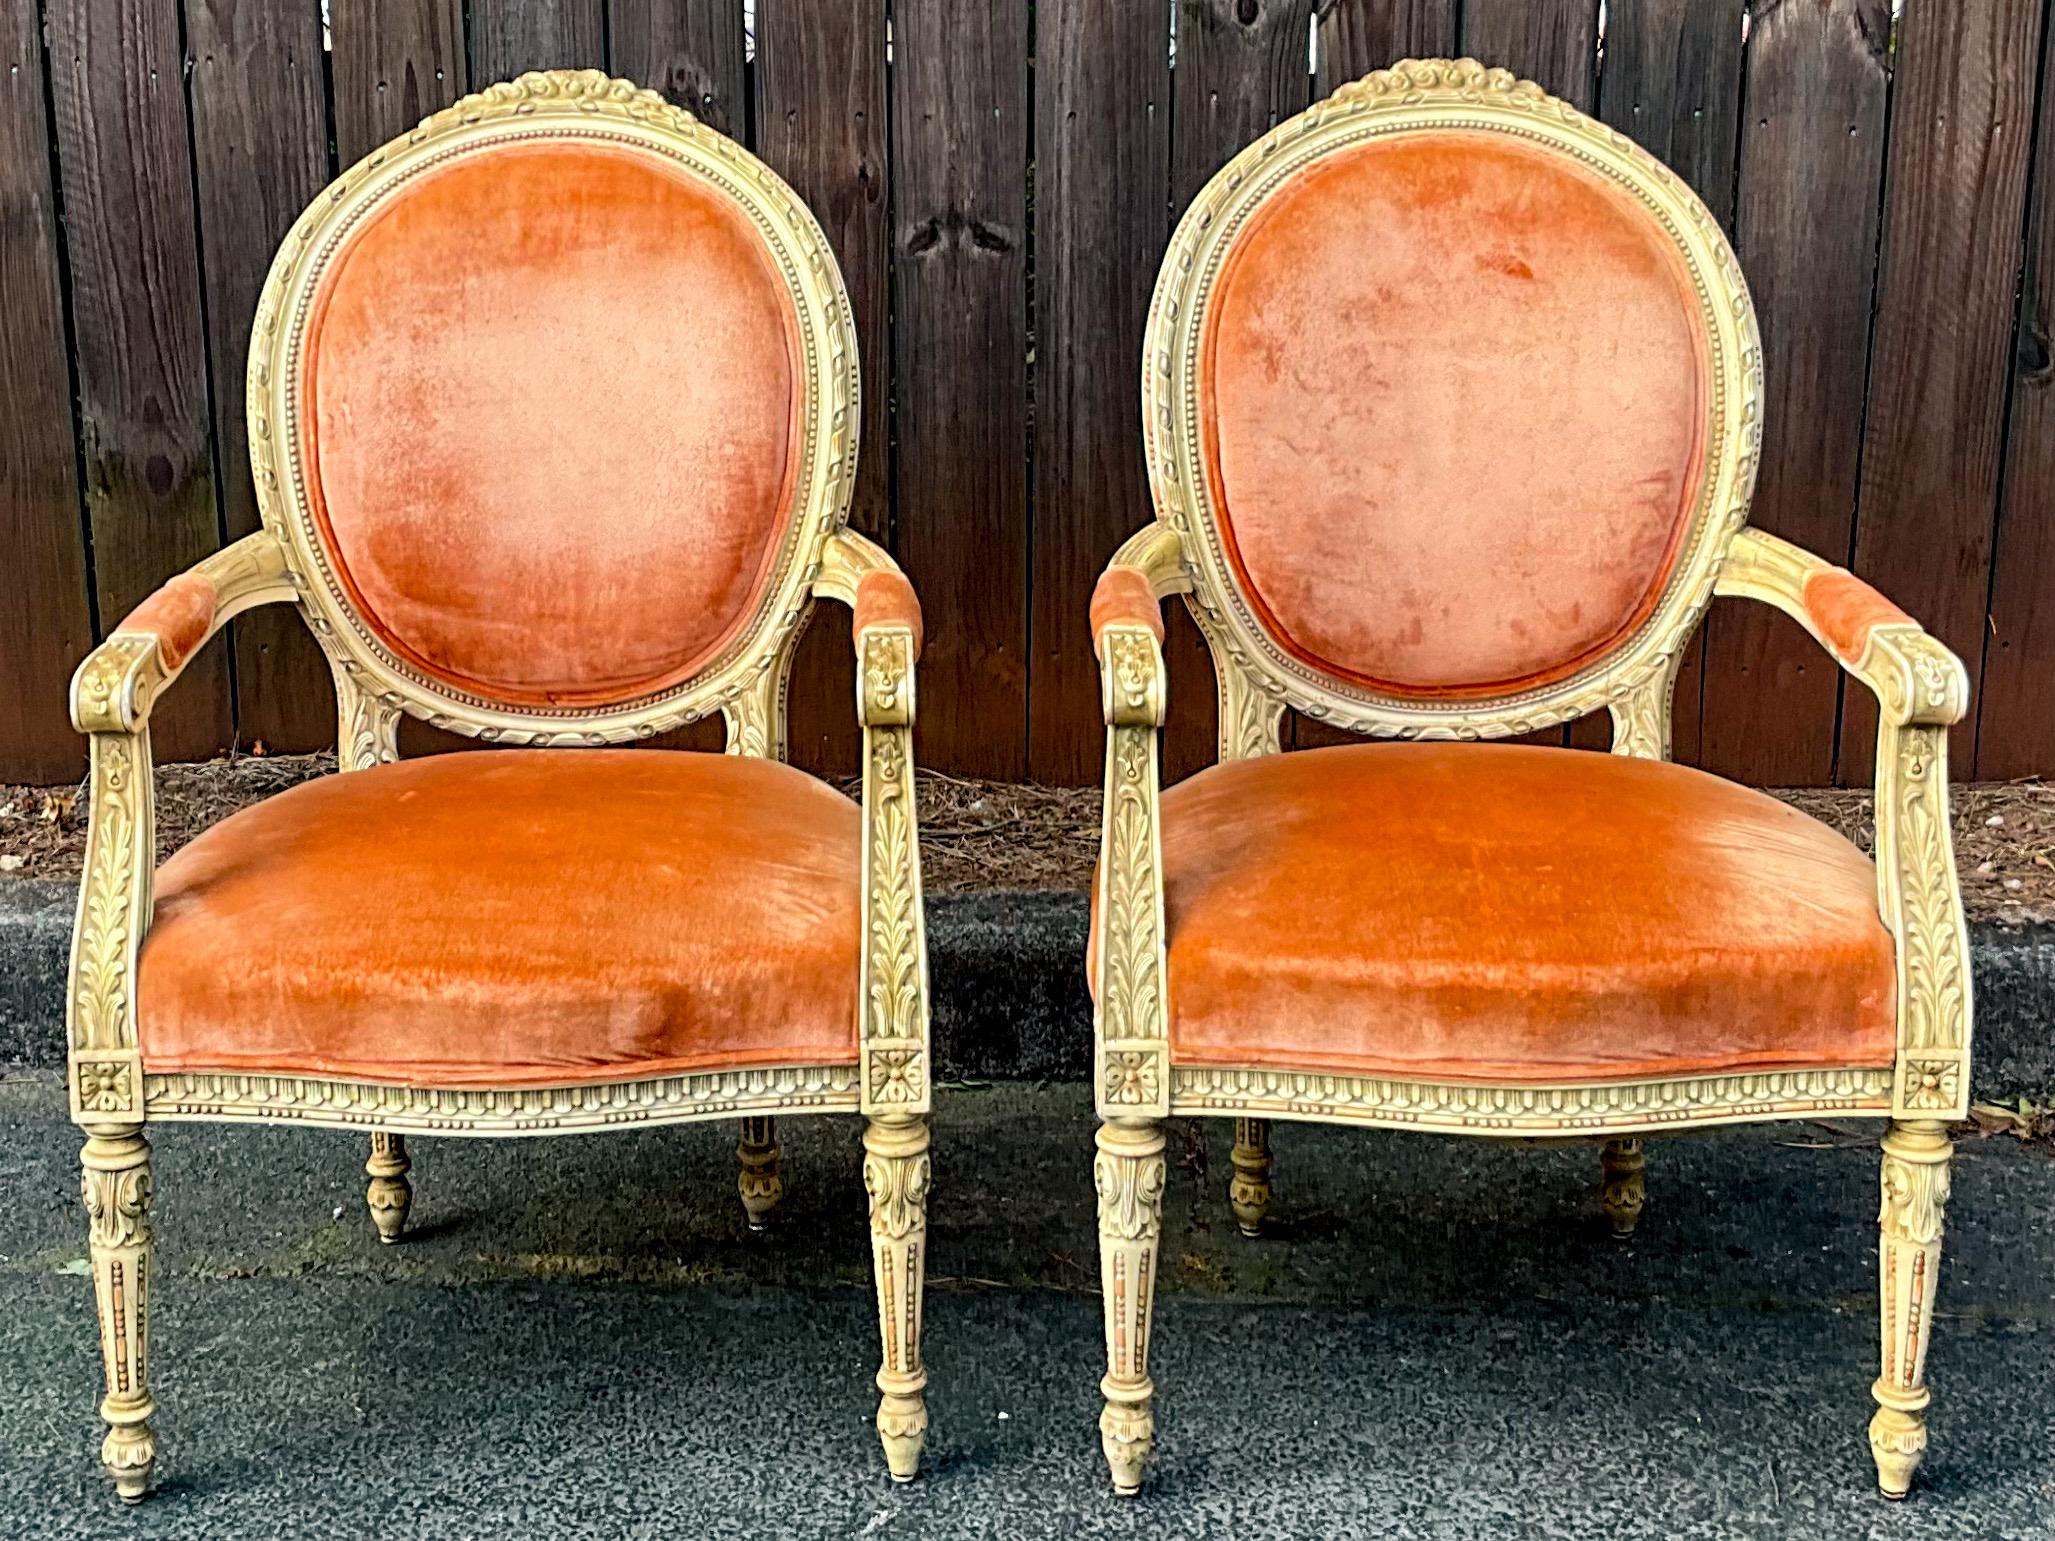 Dies ist eine schön geschnitzte Französisch Louis XVI-Stil bergere Stühle in Original-Samt. Ich glaube, sie stammen aus den 1940er oder 50er Jahren. Der Rahmen ist in antikem Elfenbein lackiert und befindet sich in sehr gutem Zustand. Der Samt weist